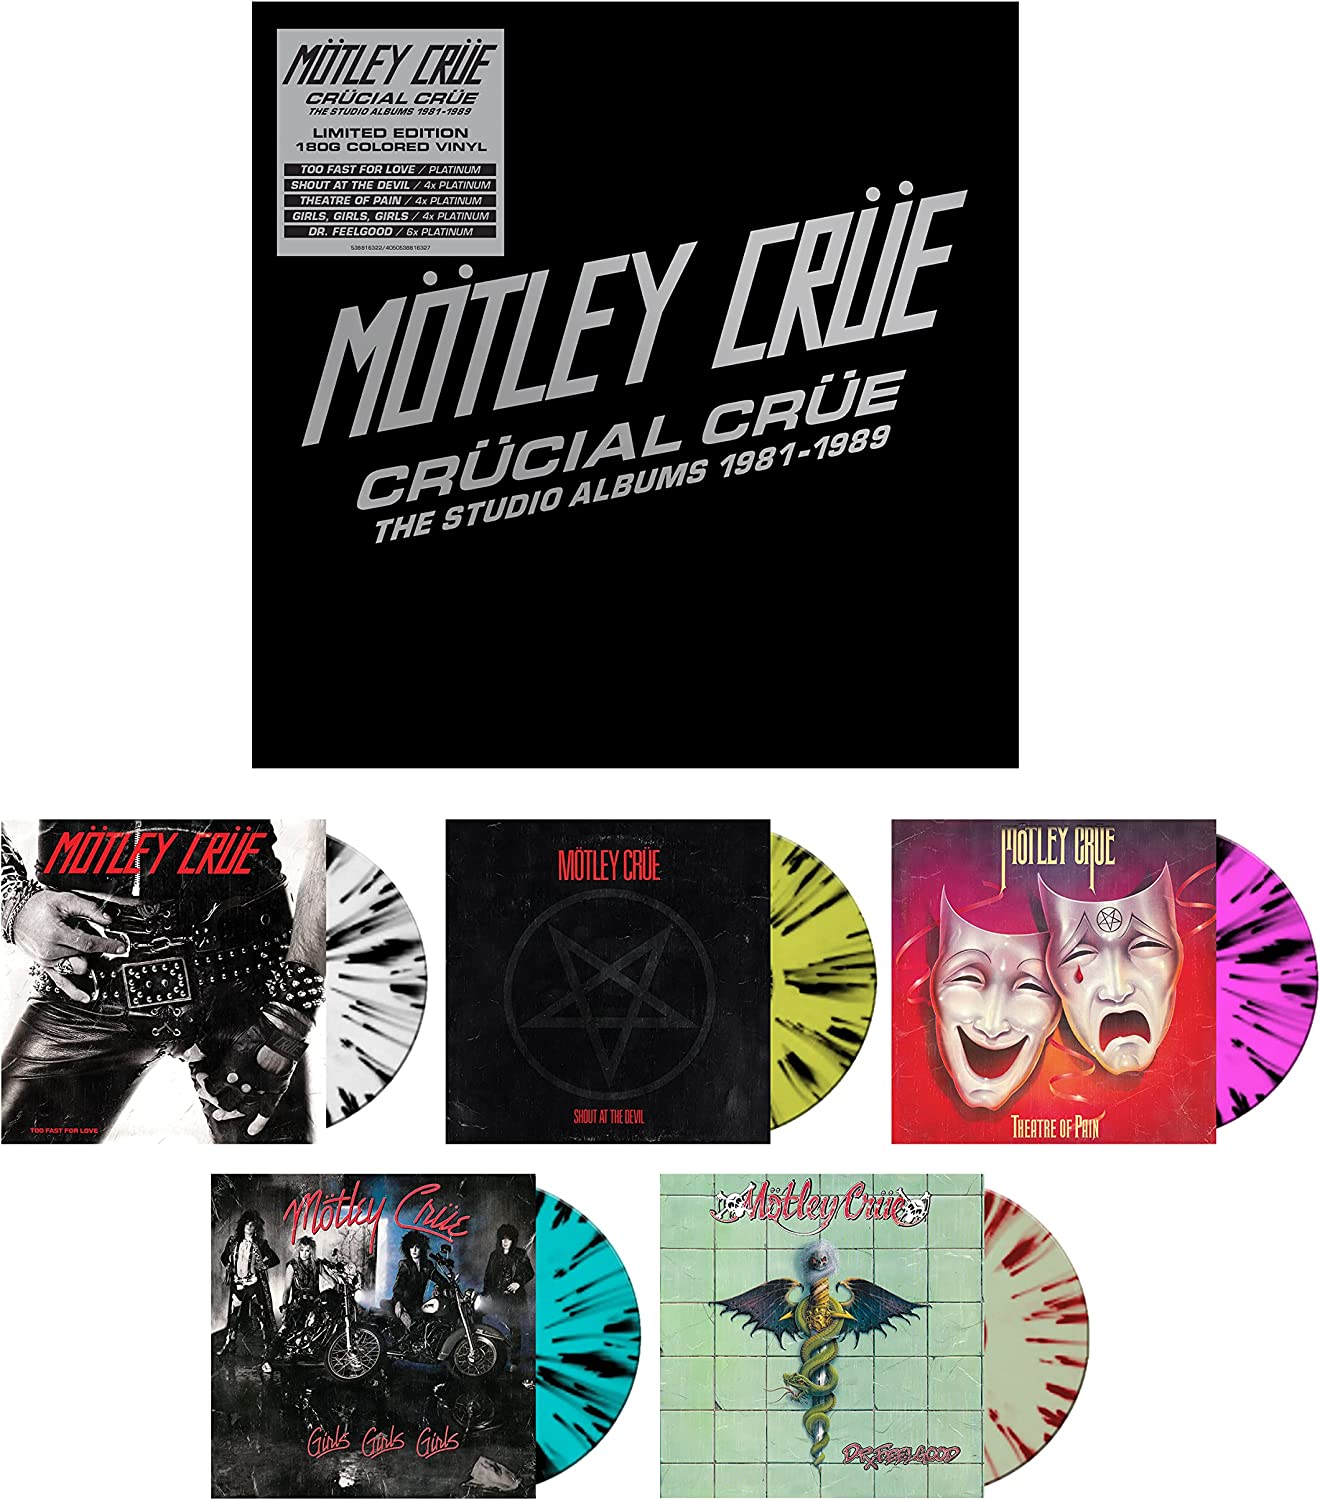 Motley Crue - Crucial Crue - The Studio Albums 1981 - 1989 - 5LP